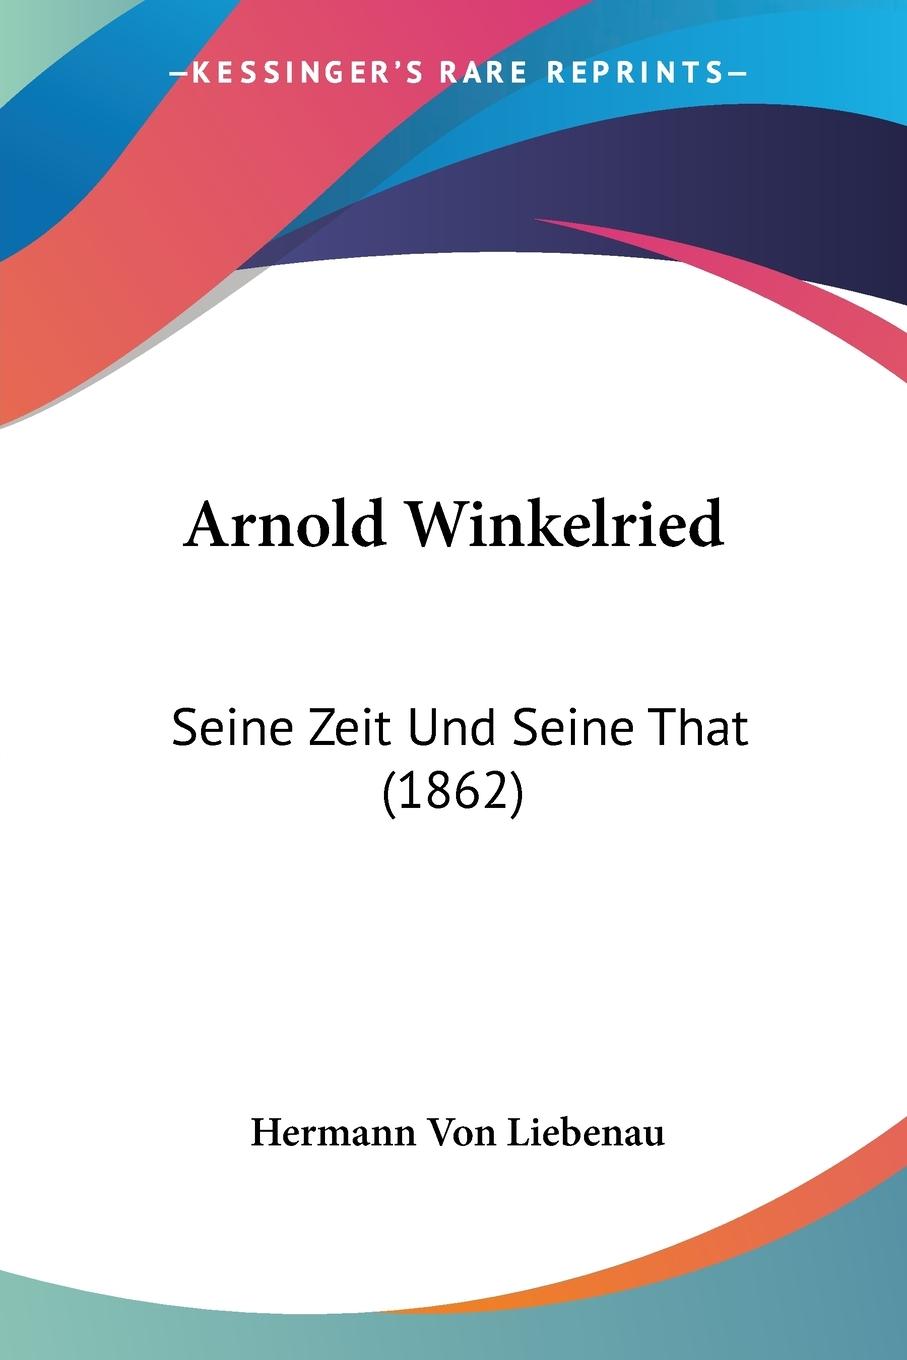 Arnold Winkelried - Liebenau, Hermann von